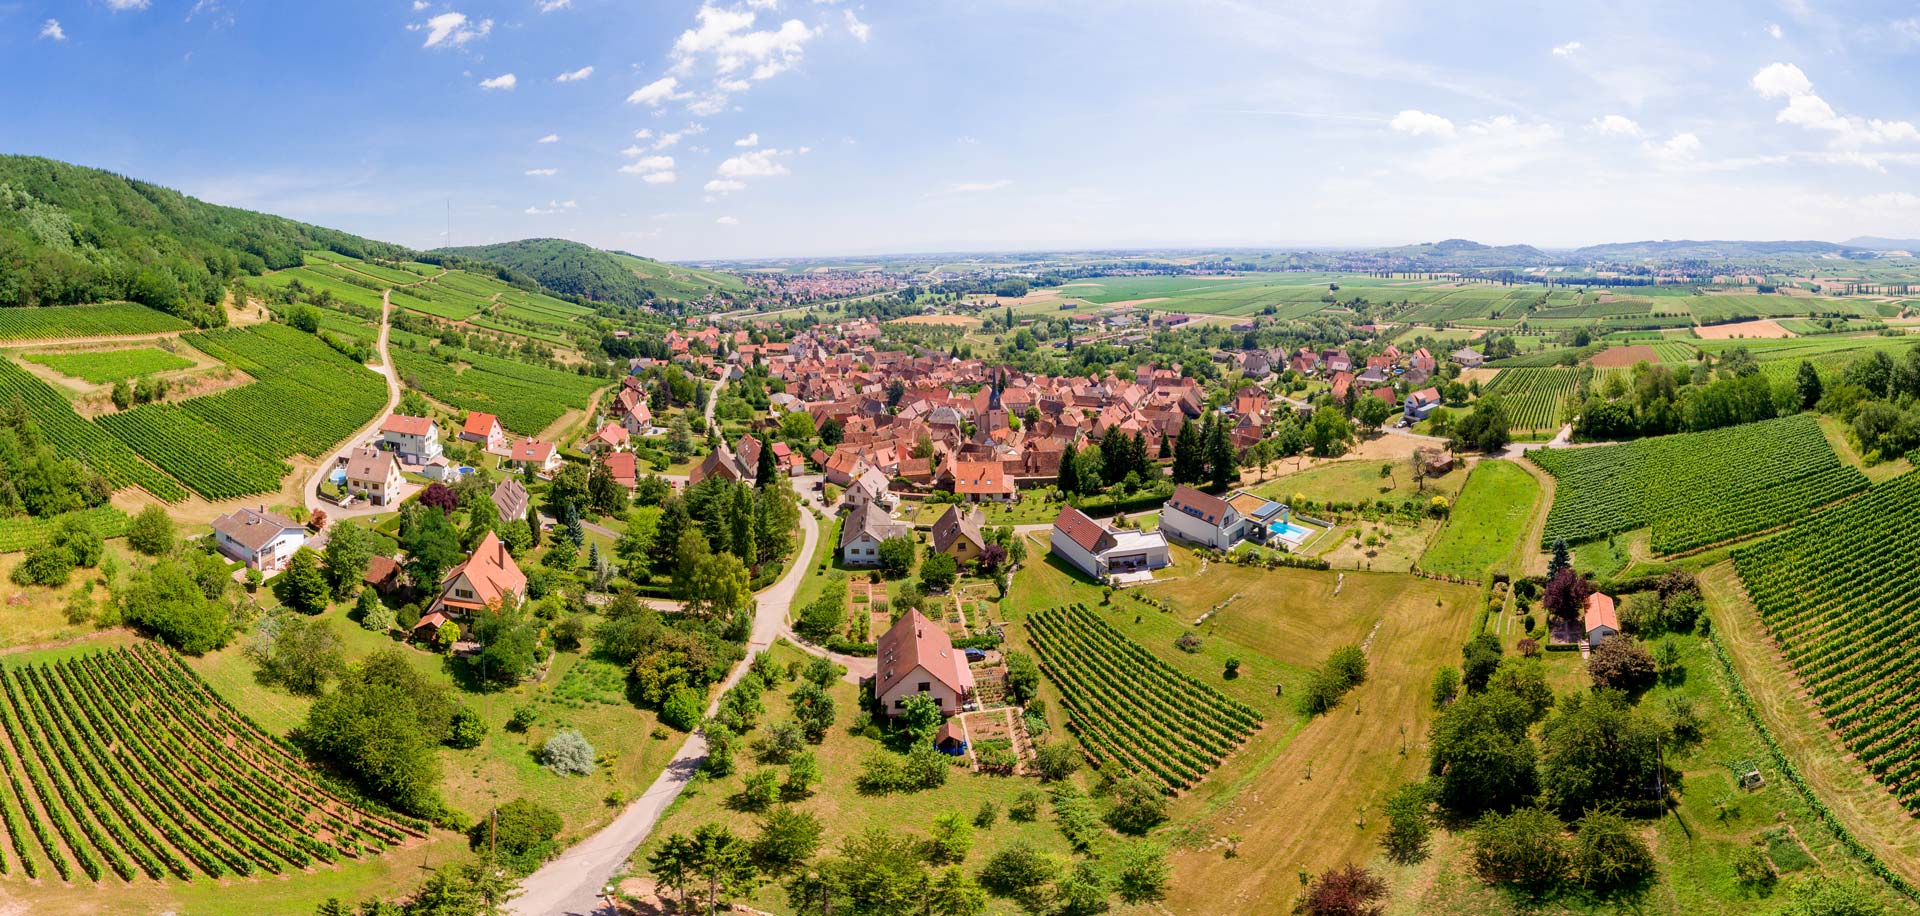 Phototographe aérien par drone Strasbourg - Prise de vue panoramique aérienne du village de Wangen en Alsace